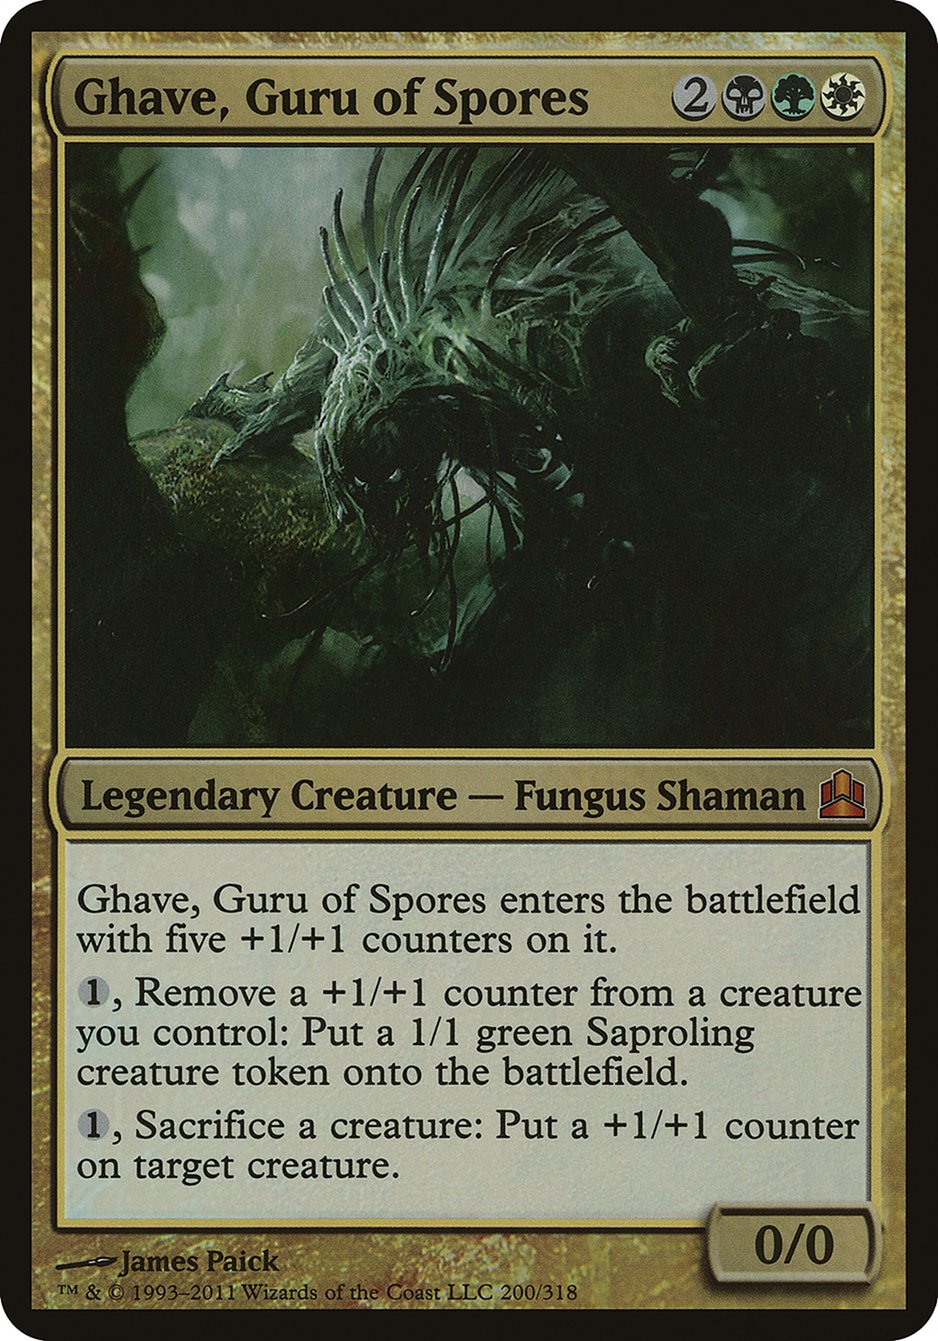 Ghave, Guru of Spores - MTG Card versions